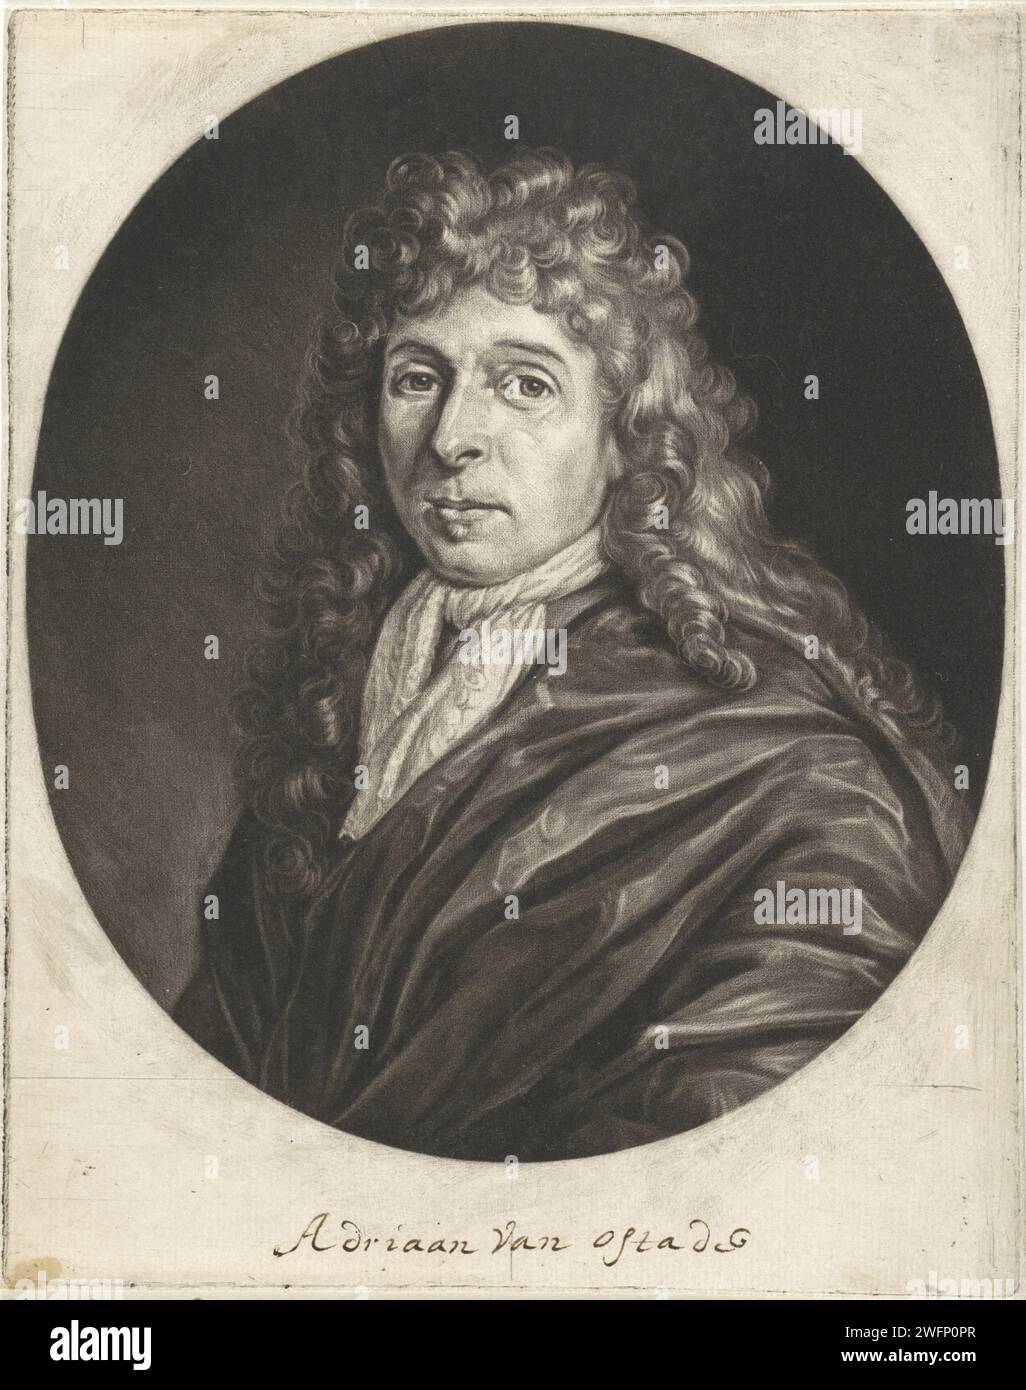 Portrait d'Adriaen van Ostade, Jacob Gole, d'après Cornelis Dusart, 1685 estampe du peintre Adriaen van Ostade. Il porte un col en dentelle. Journal d'Amsterdam Banque D'Images